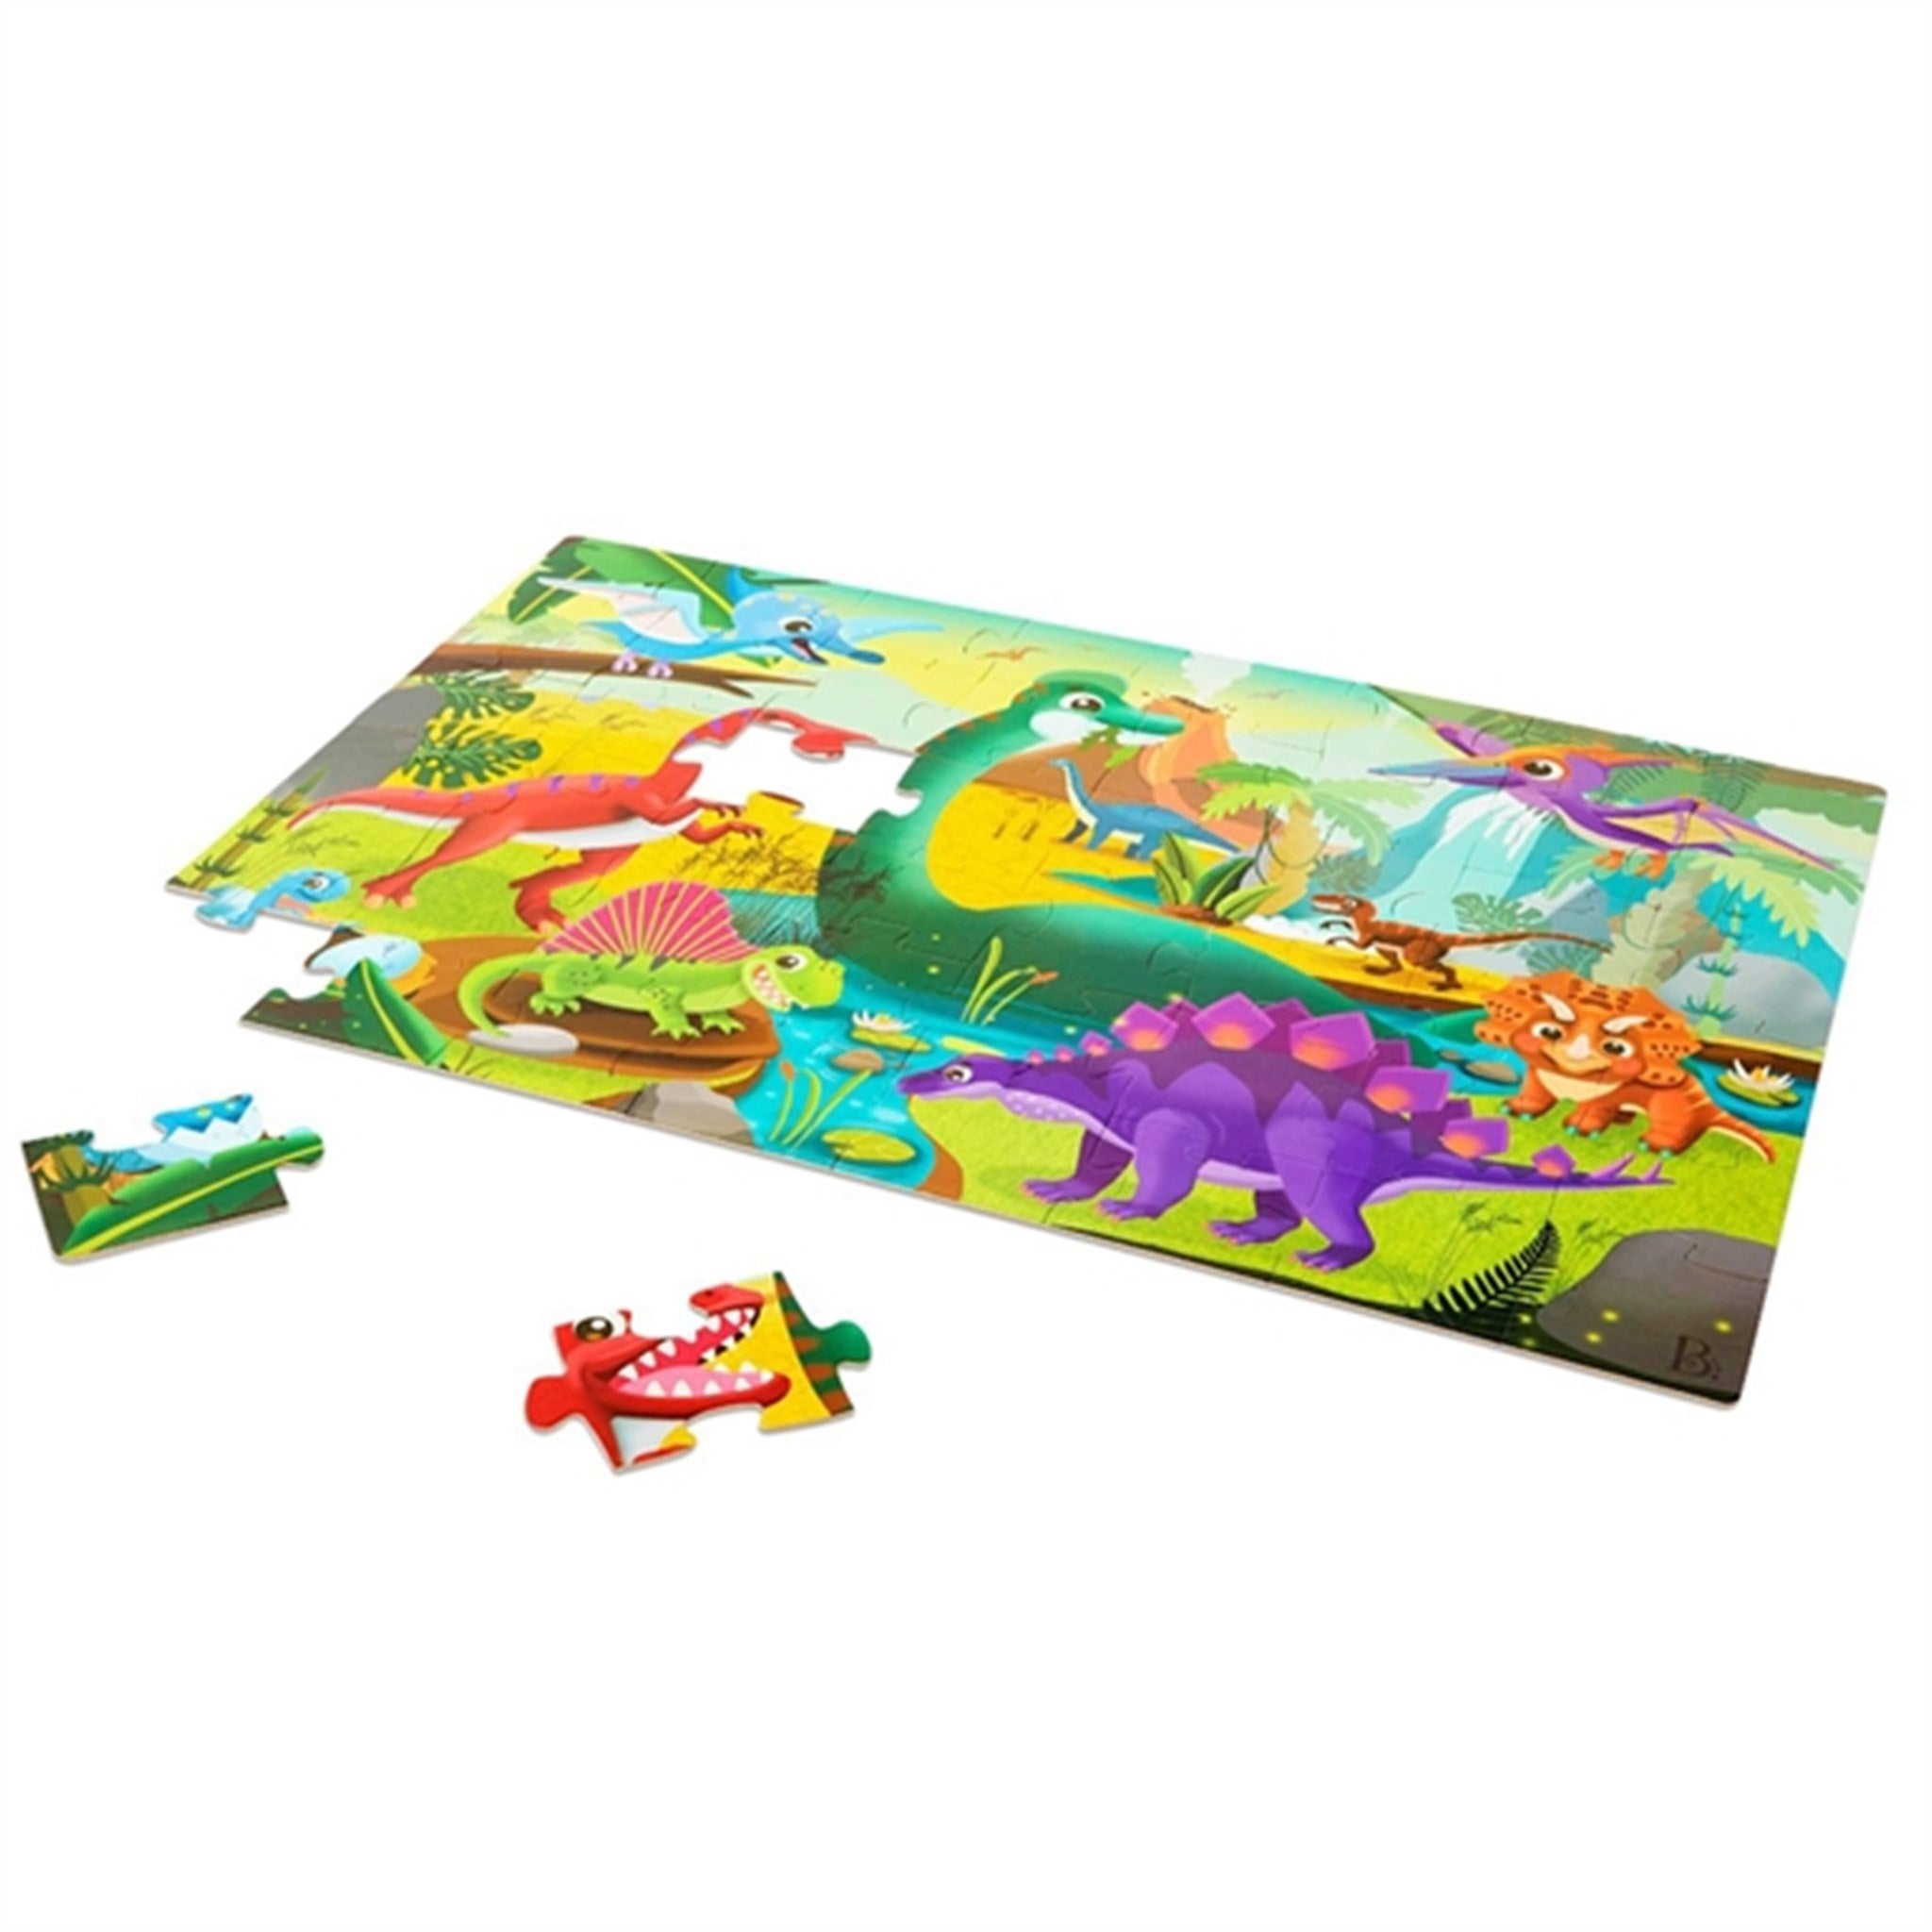 B-toys Giant Jigsaw Floor Puzzle Dino